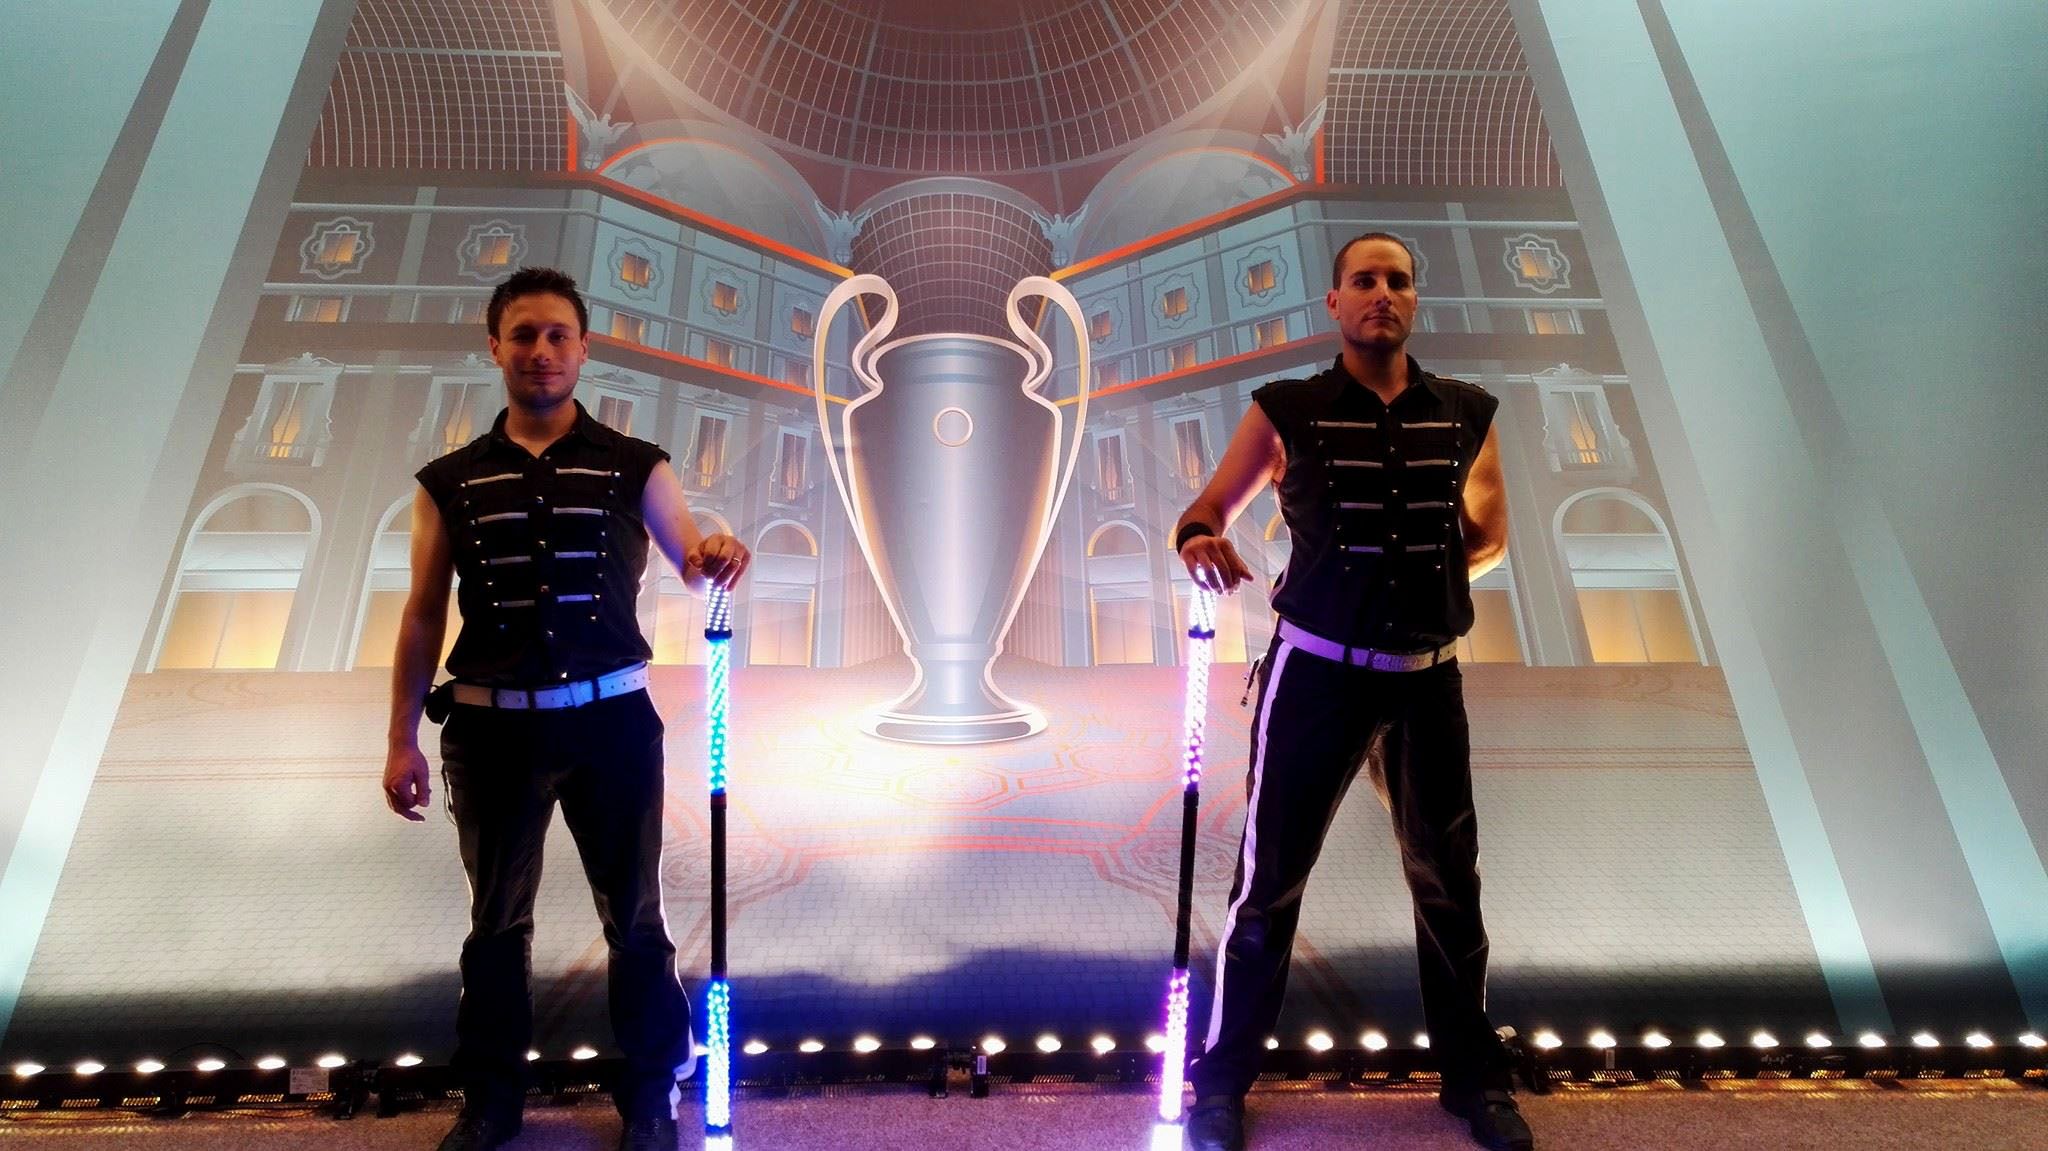 Spettacolo-di-giocoleria-LED-per-finale-di-Coppa-Campioni.jpg